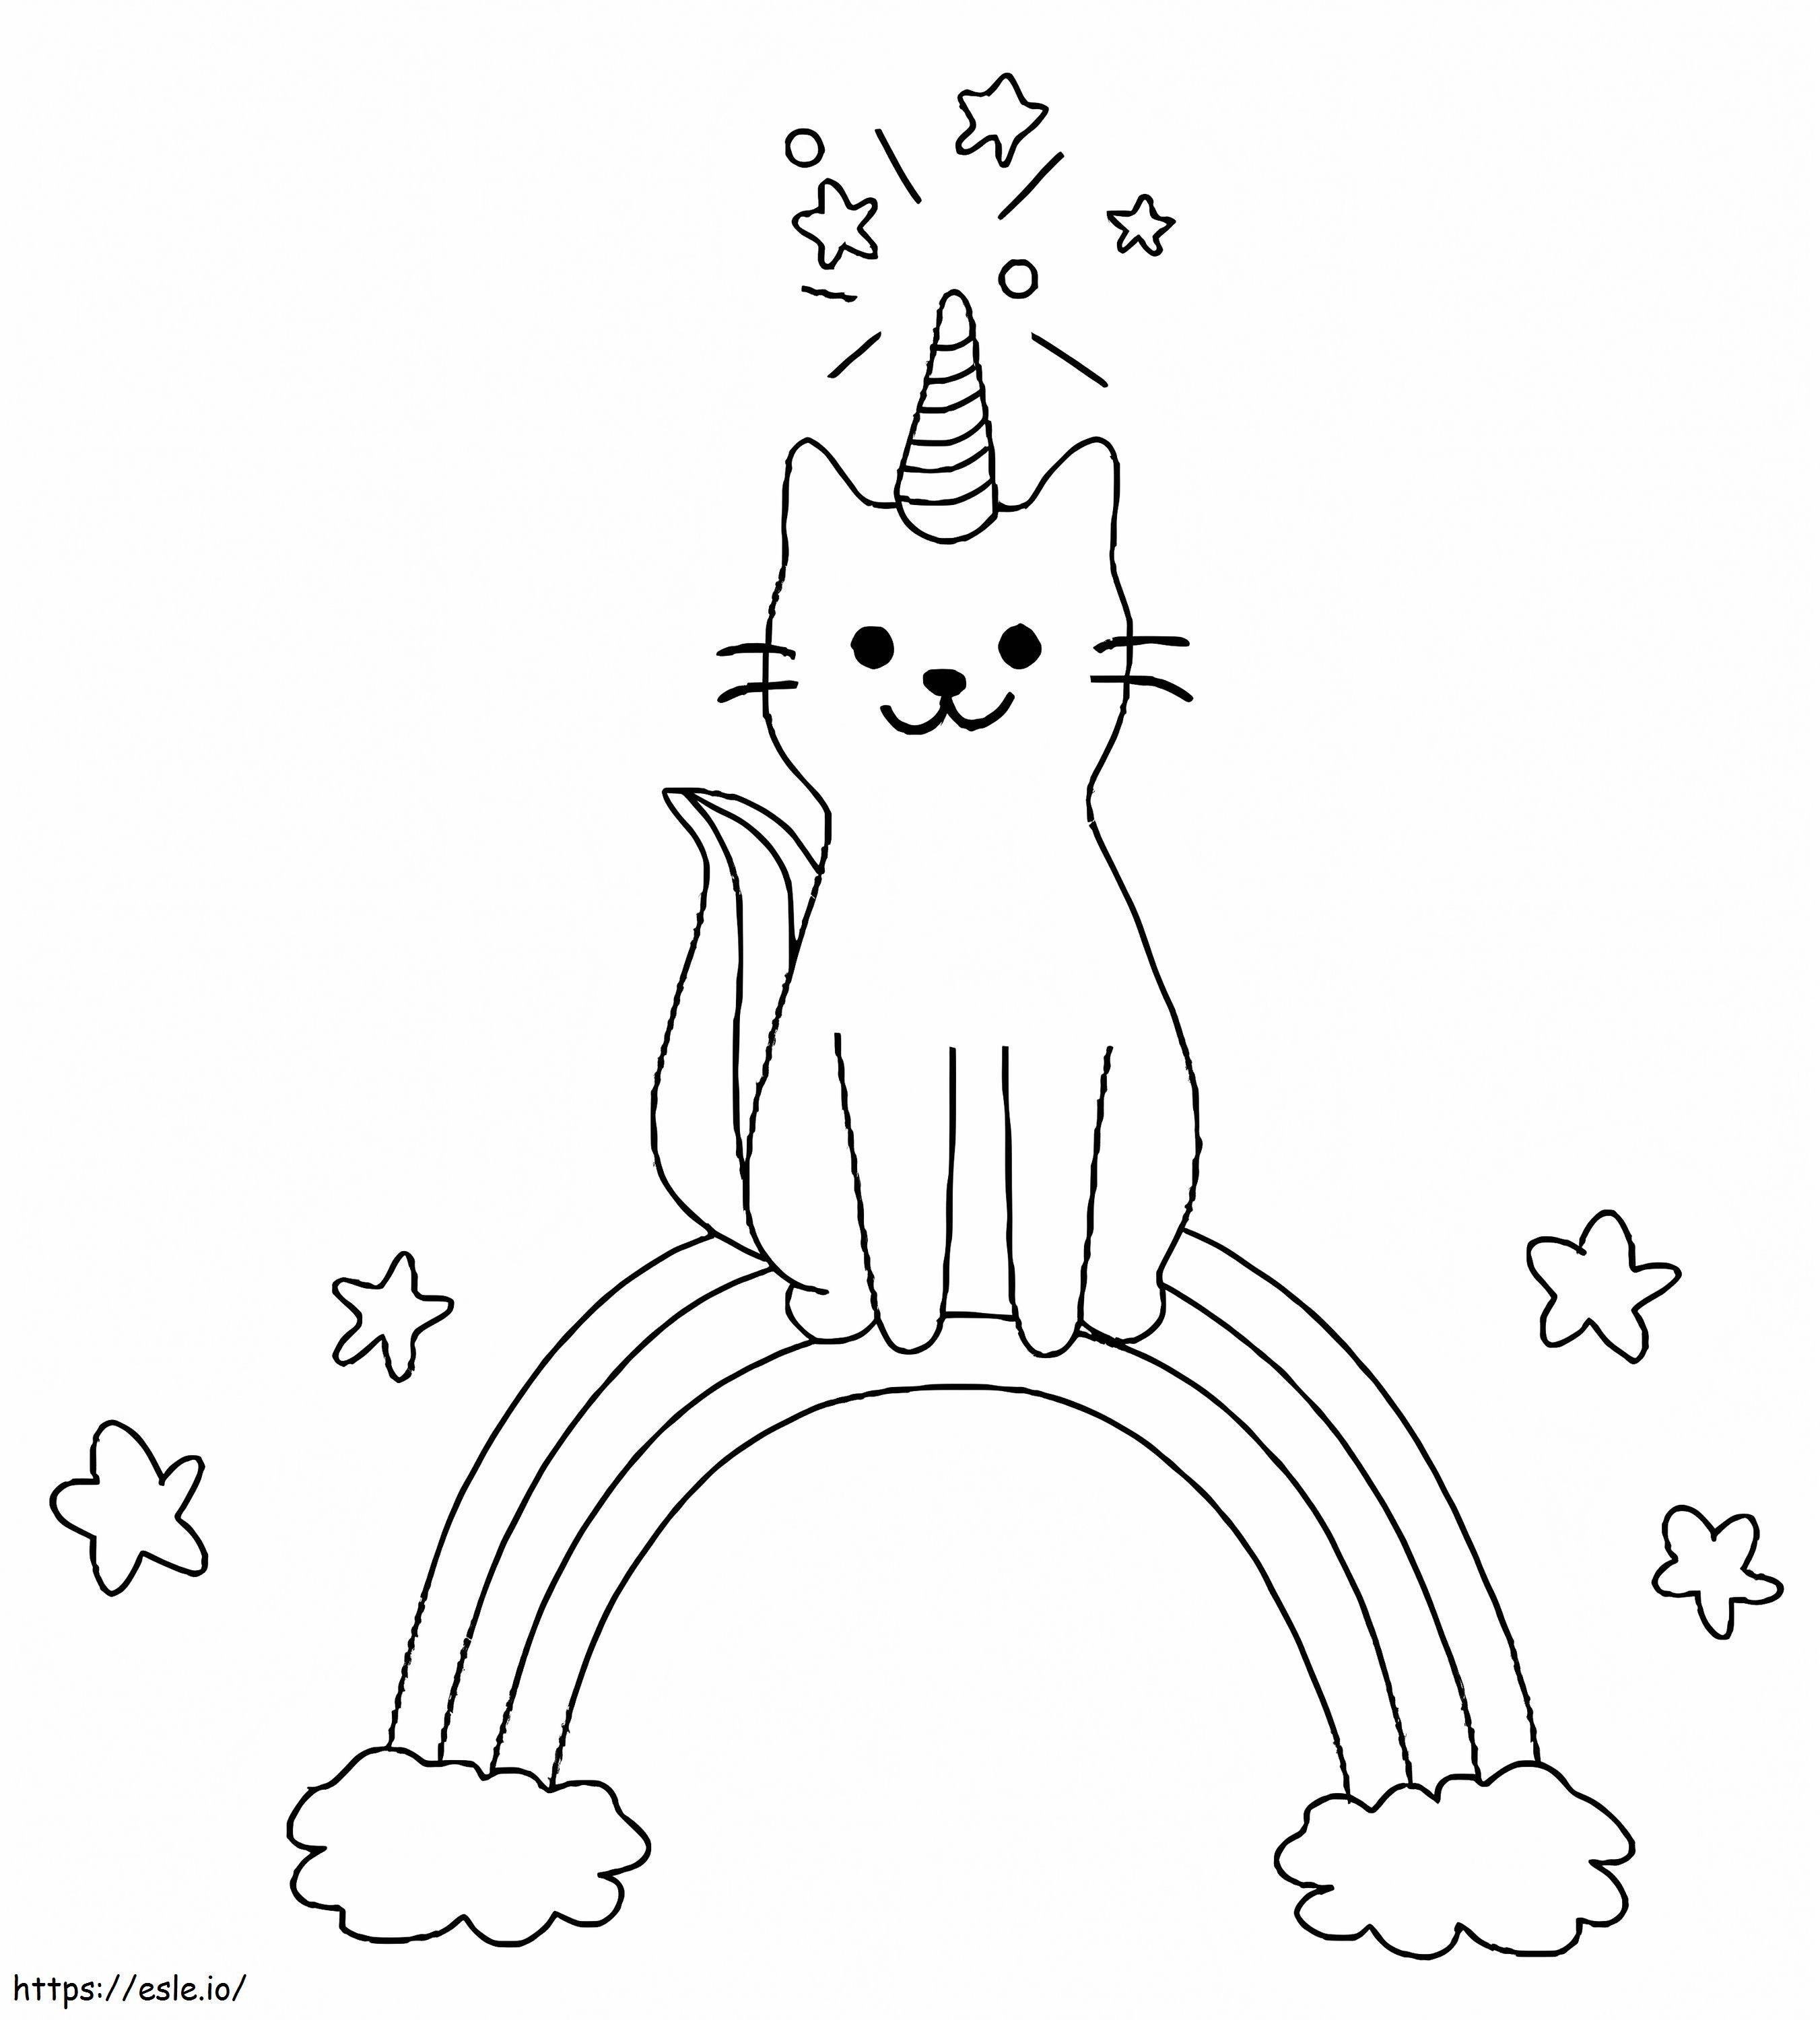 Havalı Tek Boynuzlu Kedi boyama